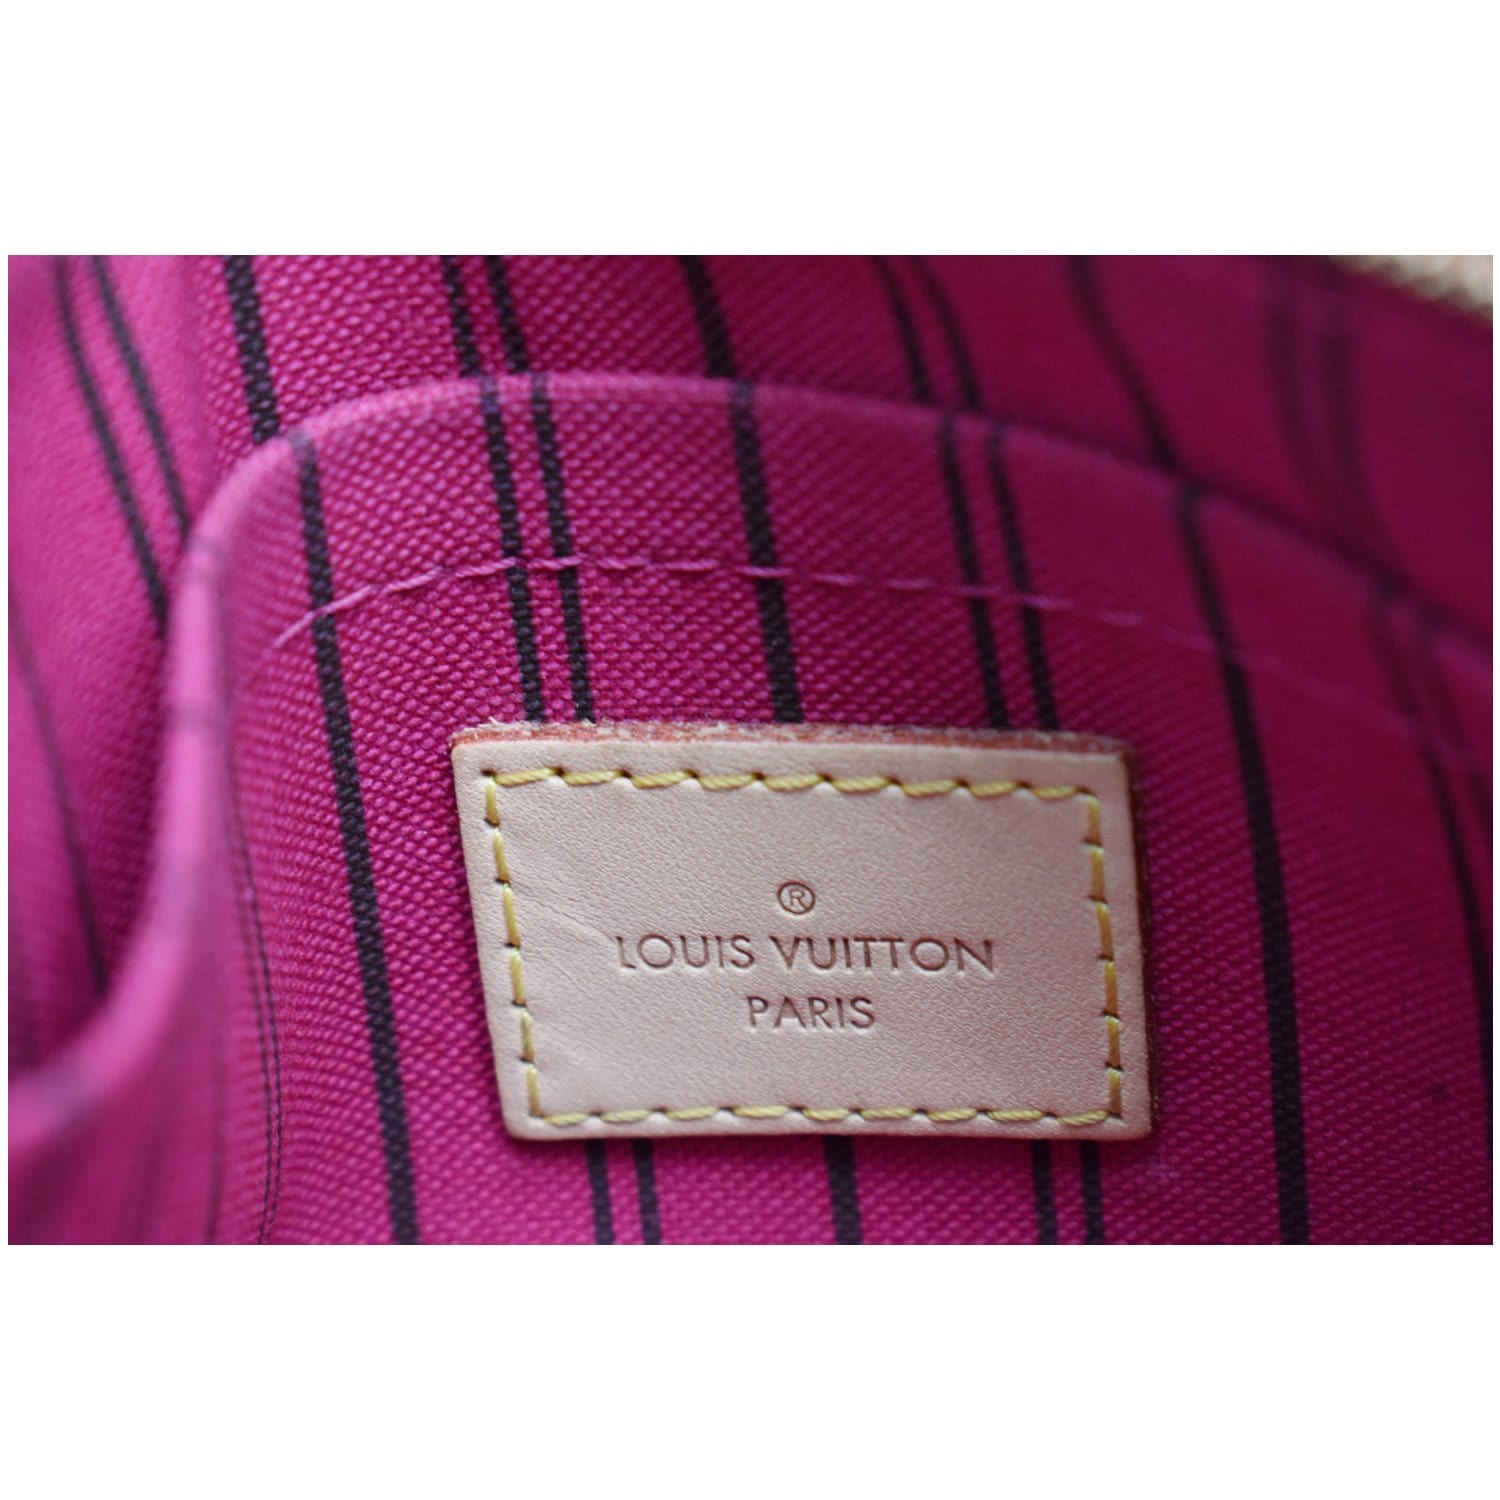 Authentic Louis Vuitton Monogram Neverfull Pouch Purse Clutch Bag LV 6544F